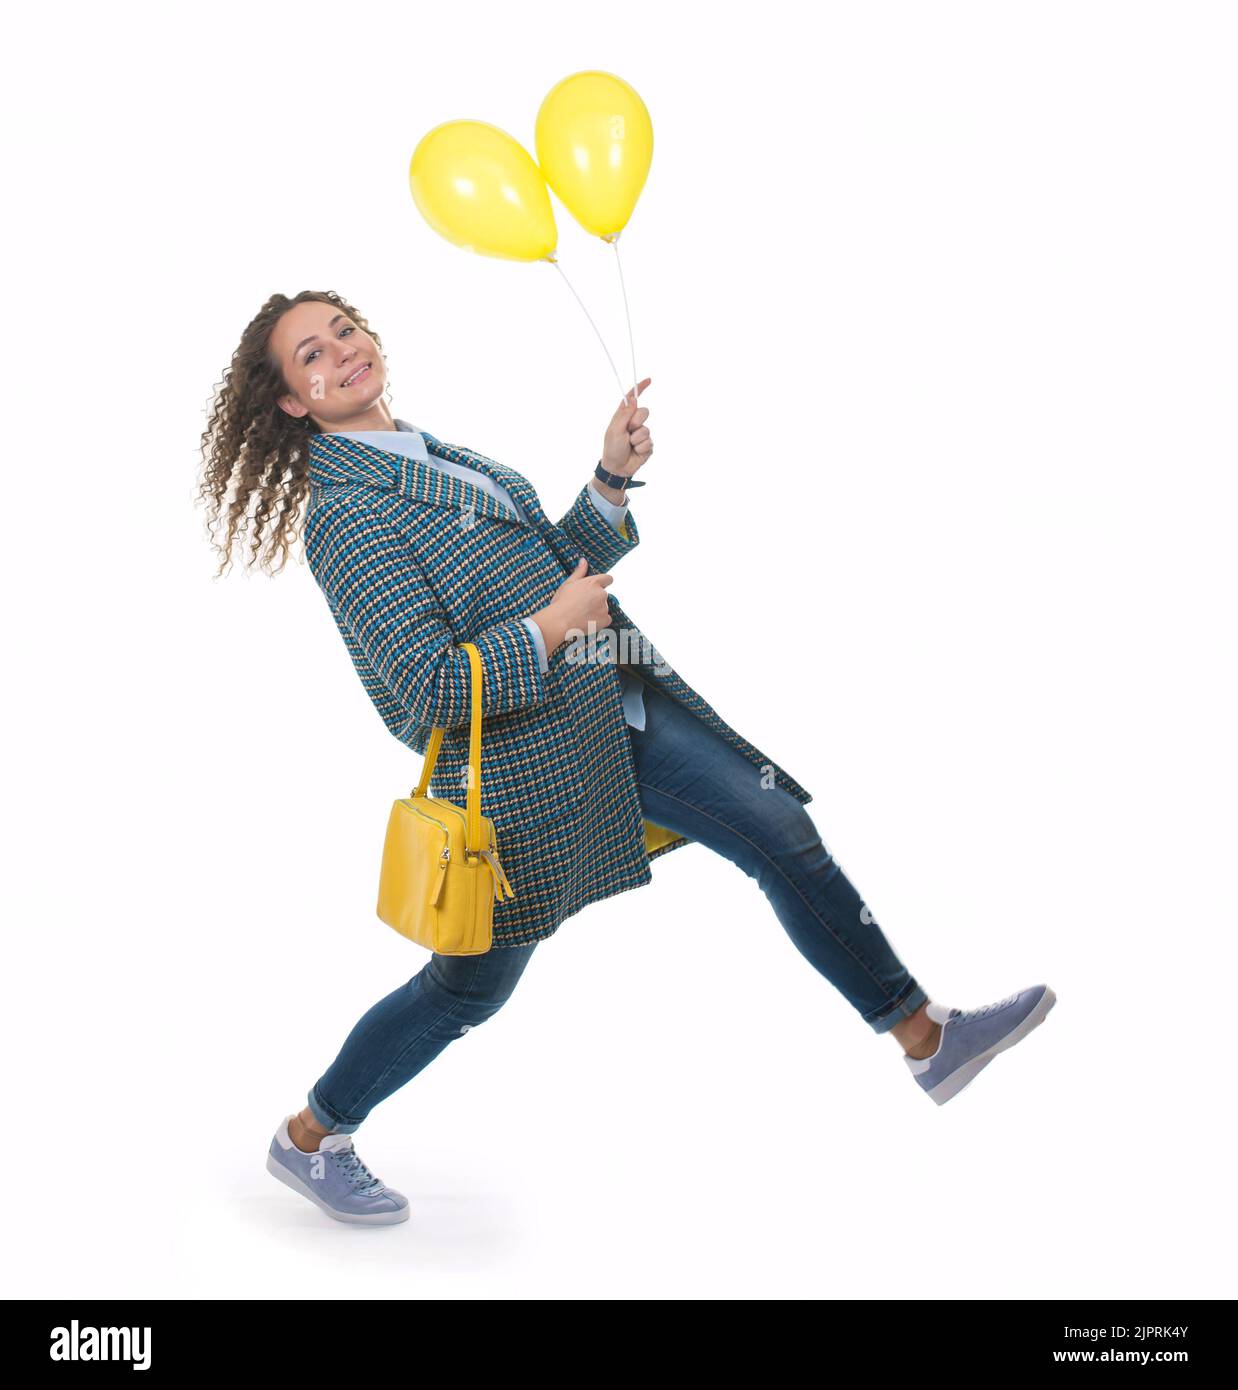 Belle jeune fille dans un manteau léger avec un sac jaune marche avec des ballons jaunes Banque D'Images